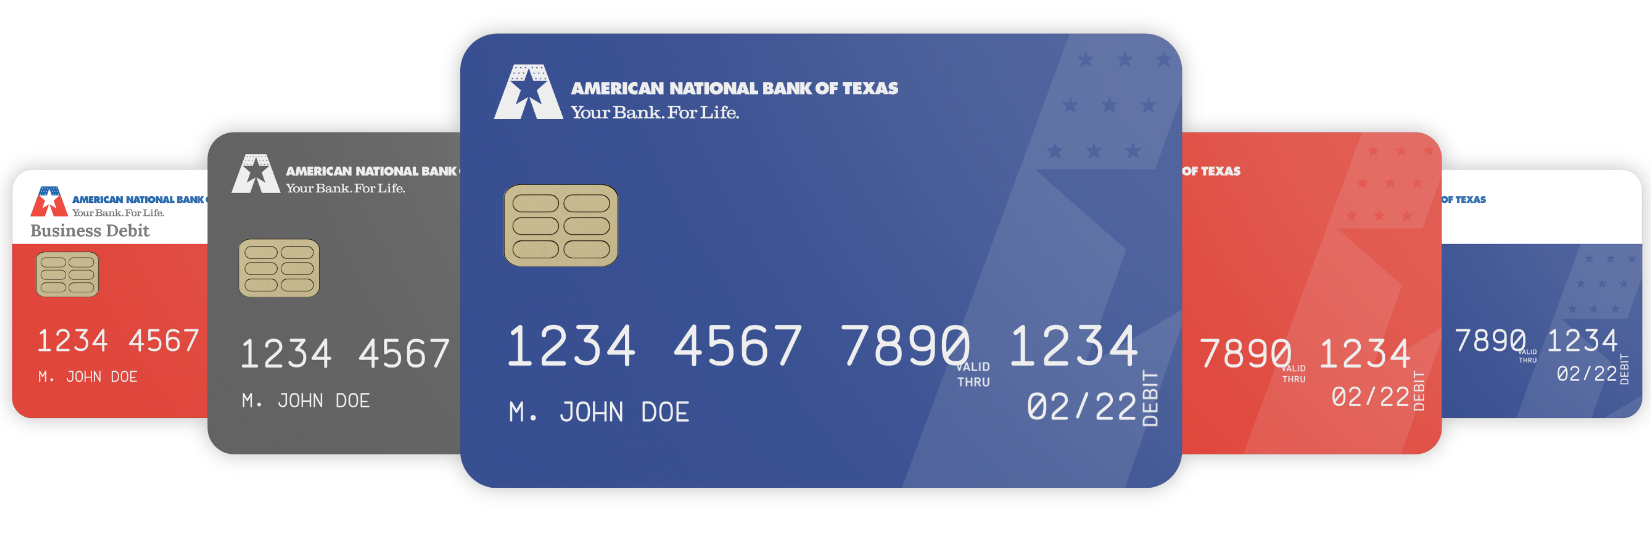 ANBTX business debit cards